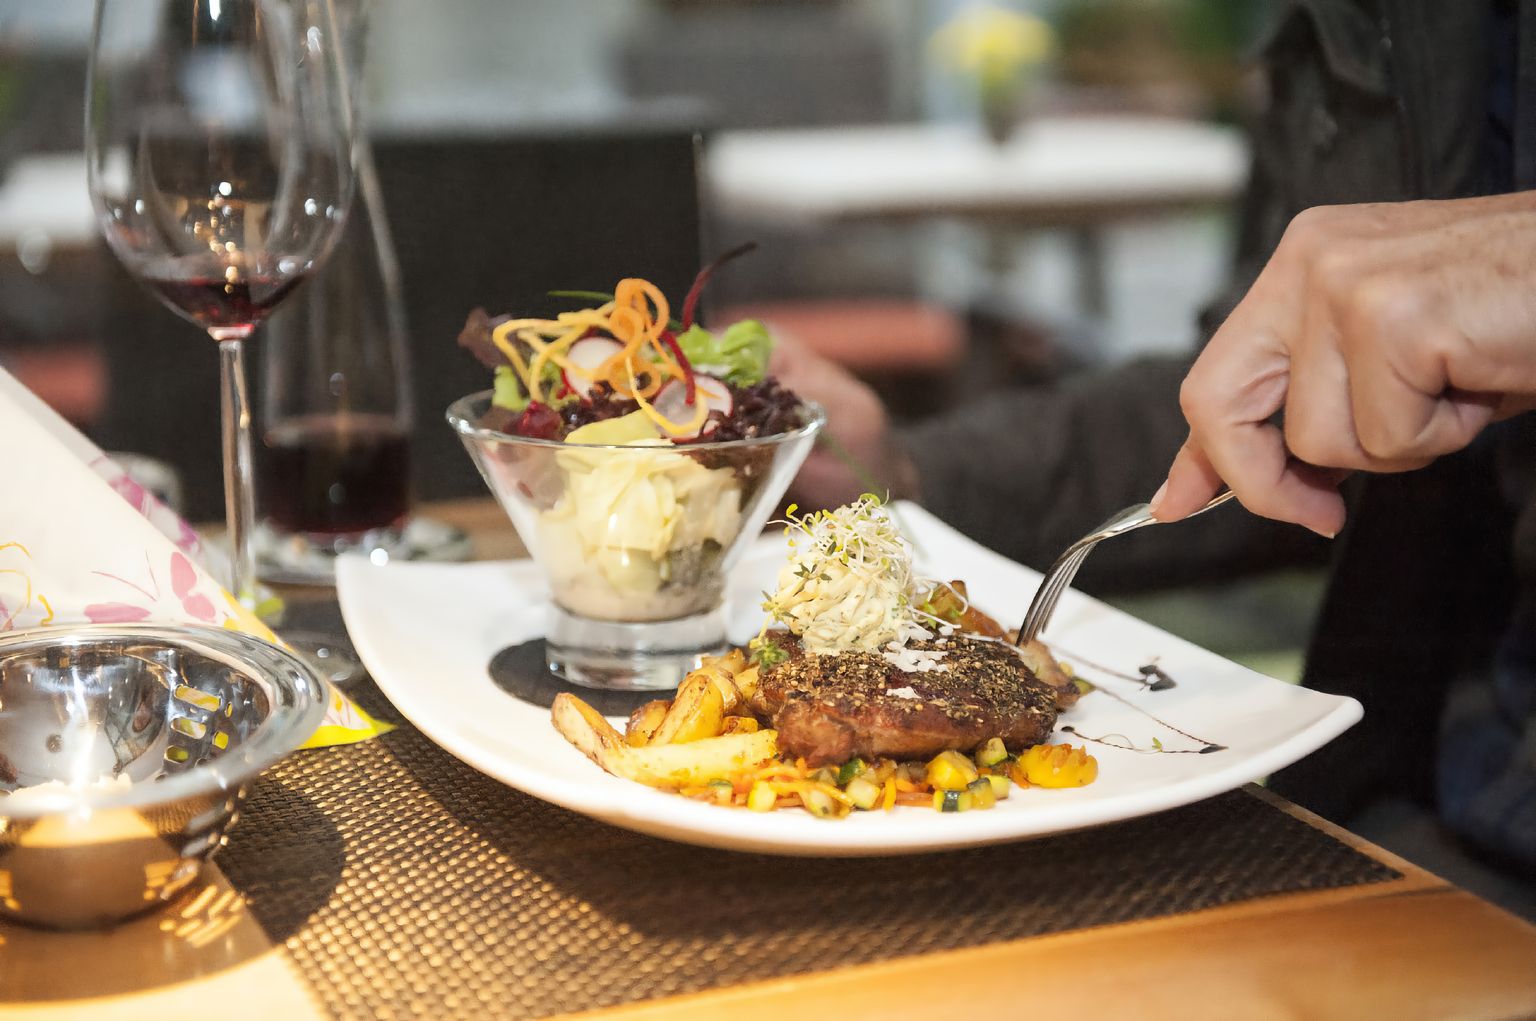 Ein rechteckiger Teller, belegt mit einem garnierten Entrecôte, Grillgemüse und Pommes frites neben einem bunten Salatglas, auf einem Tisch zusammen mit einem Glas Rotwein und der Weinkaraffe.